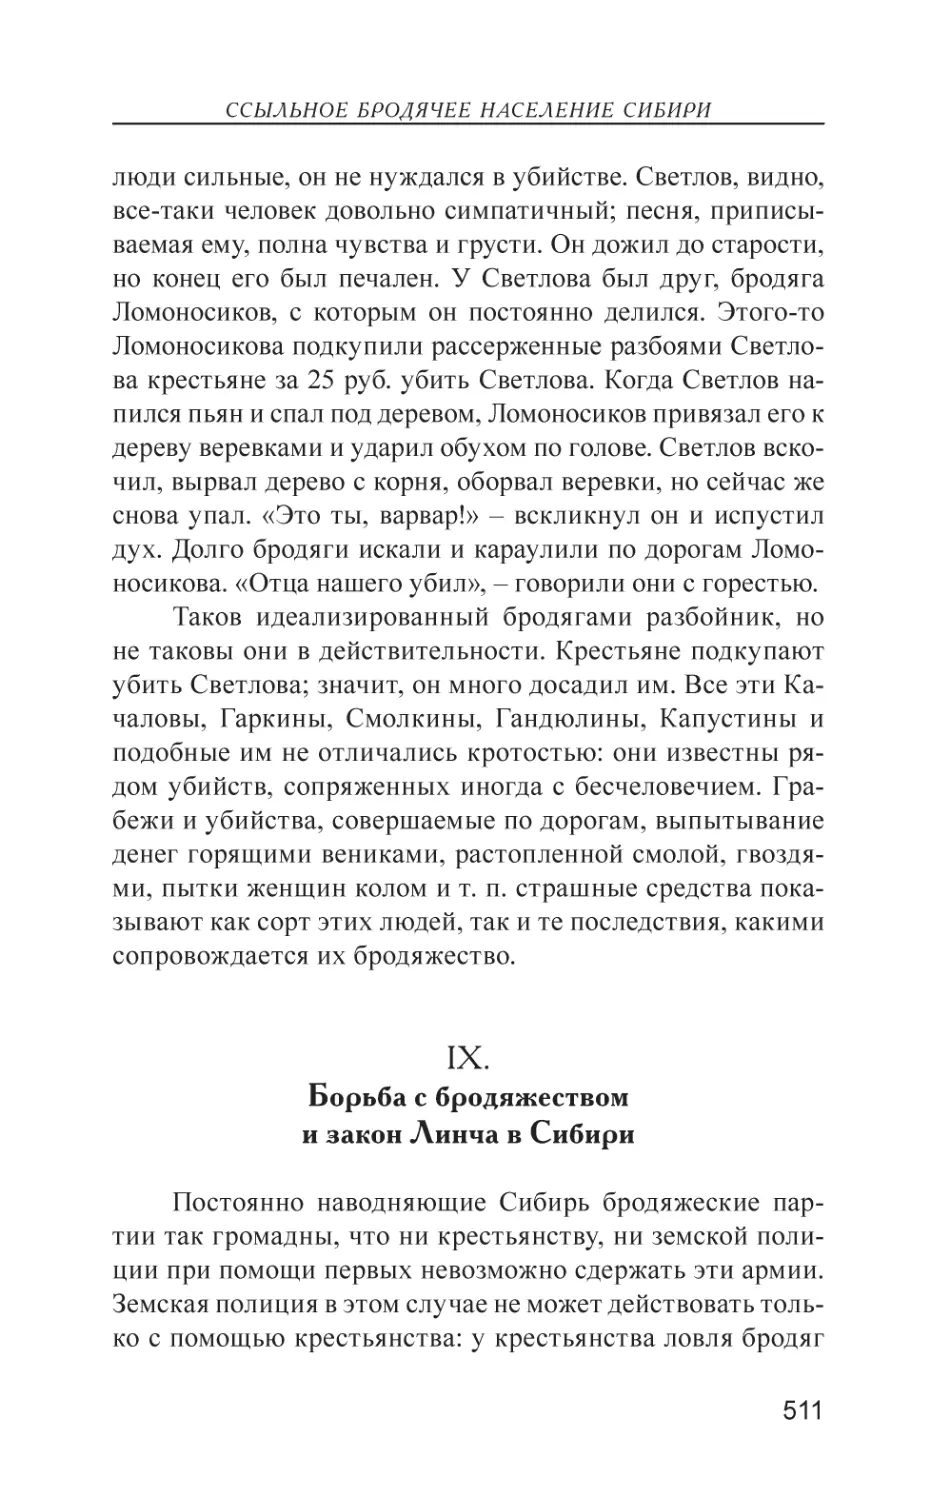 IX. Борьба с бродяжеством и закон Линча в Сибири